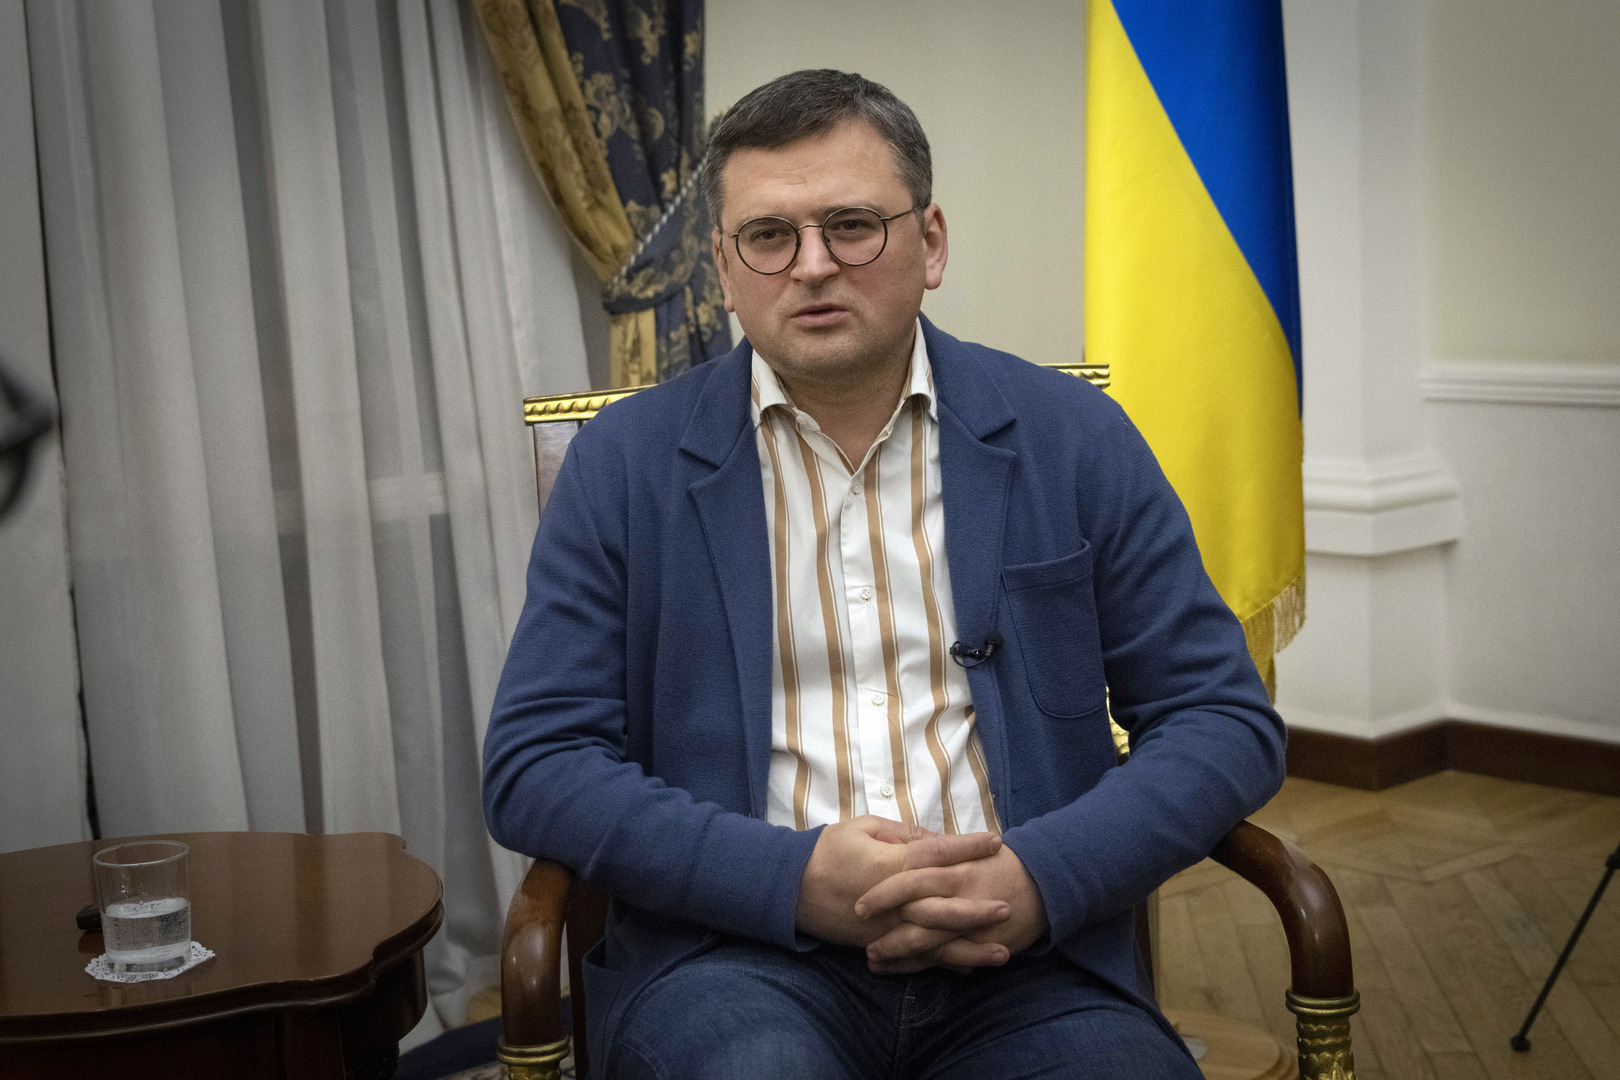 غوتيريش يبدي استعداده للتوسط في الأزمة الأوكرانية بشرط موافقة جميع الأطراف